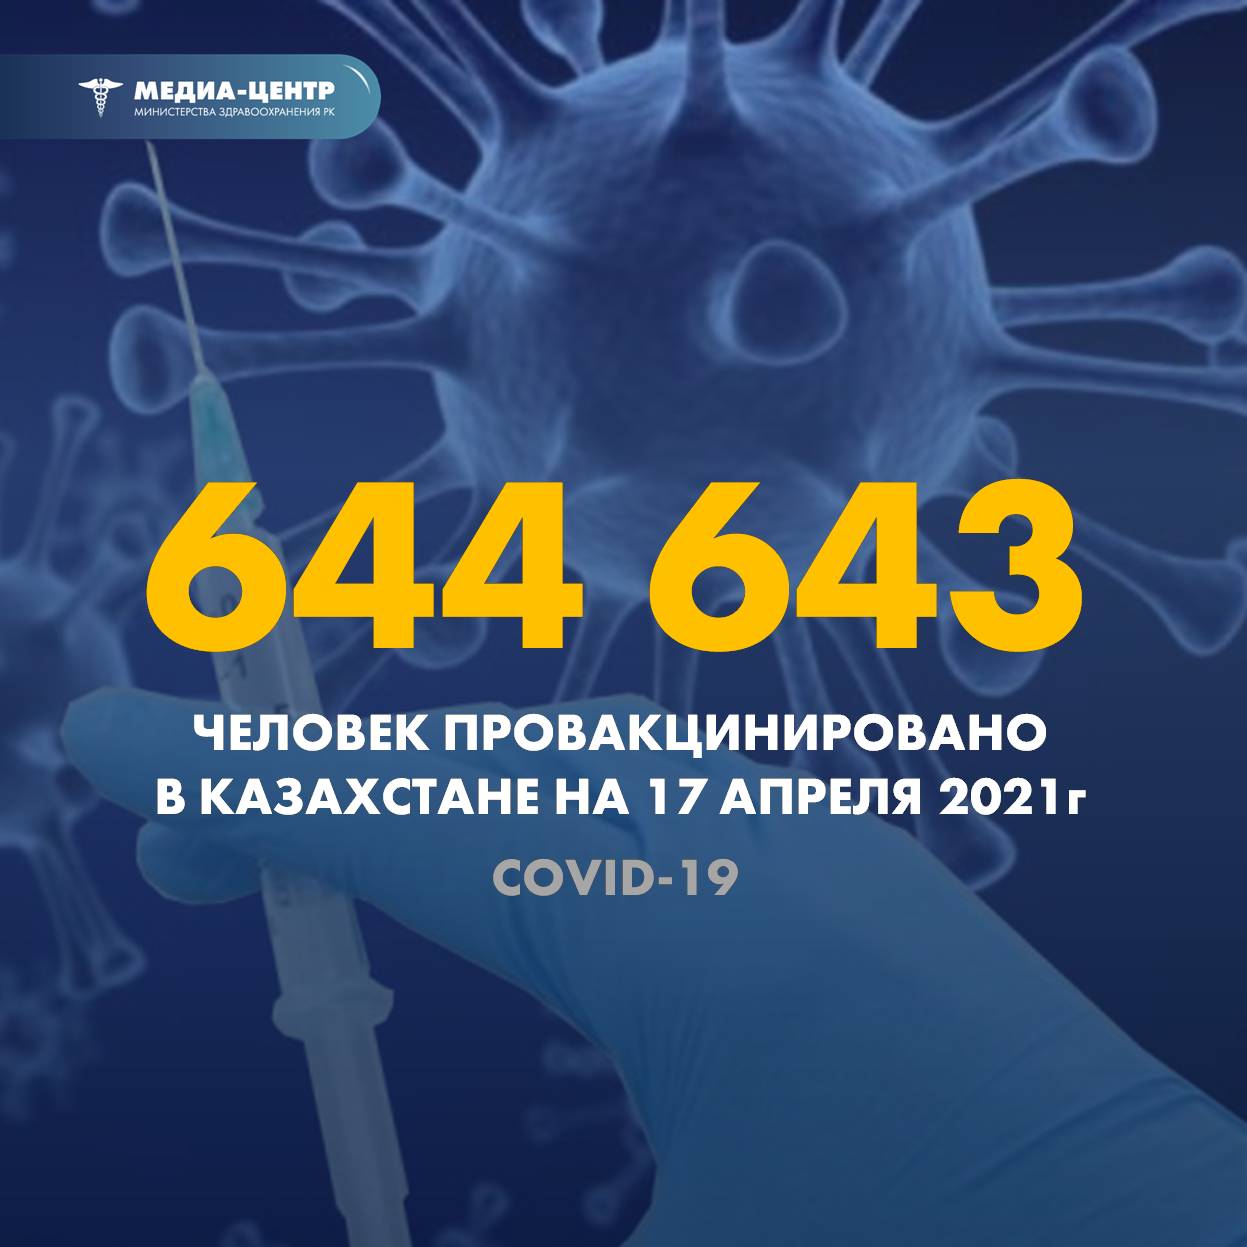 644 643 человек провакцинировано в Казахстане на 17 апреля 2021 г